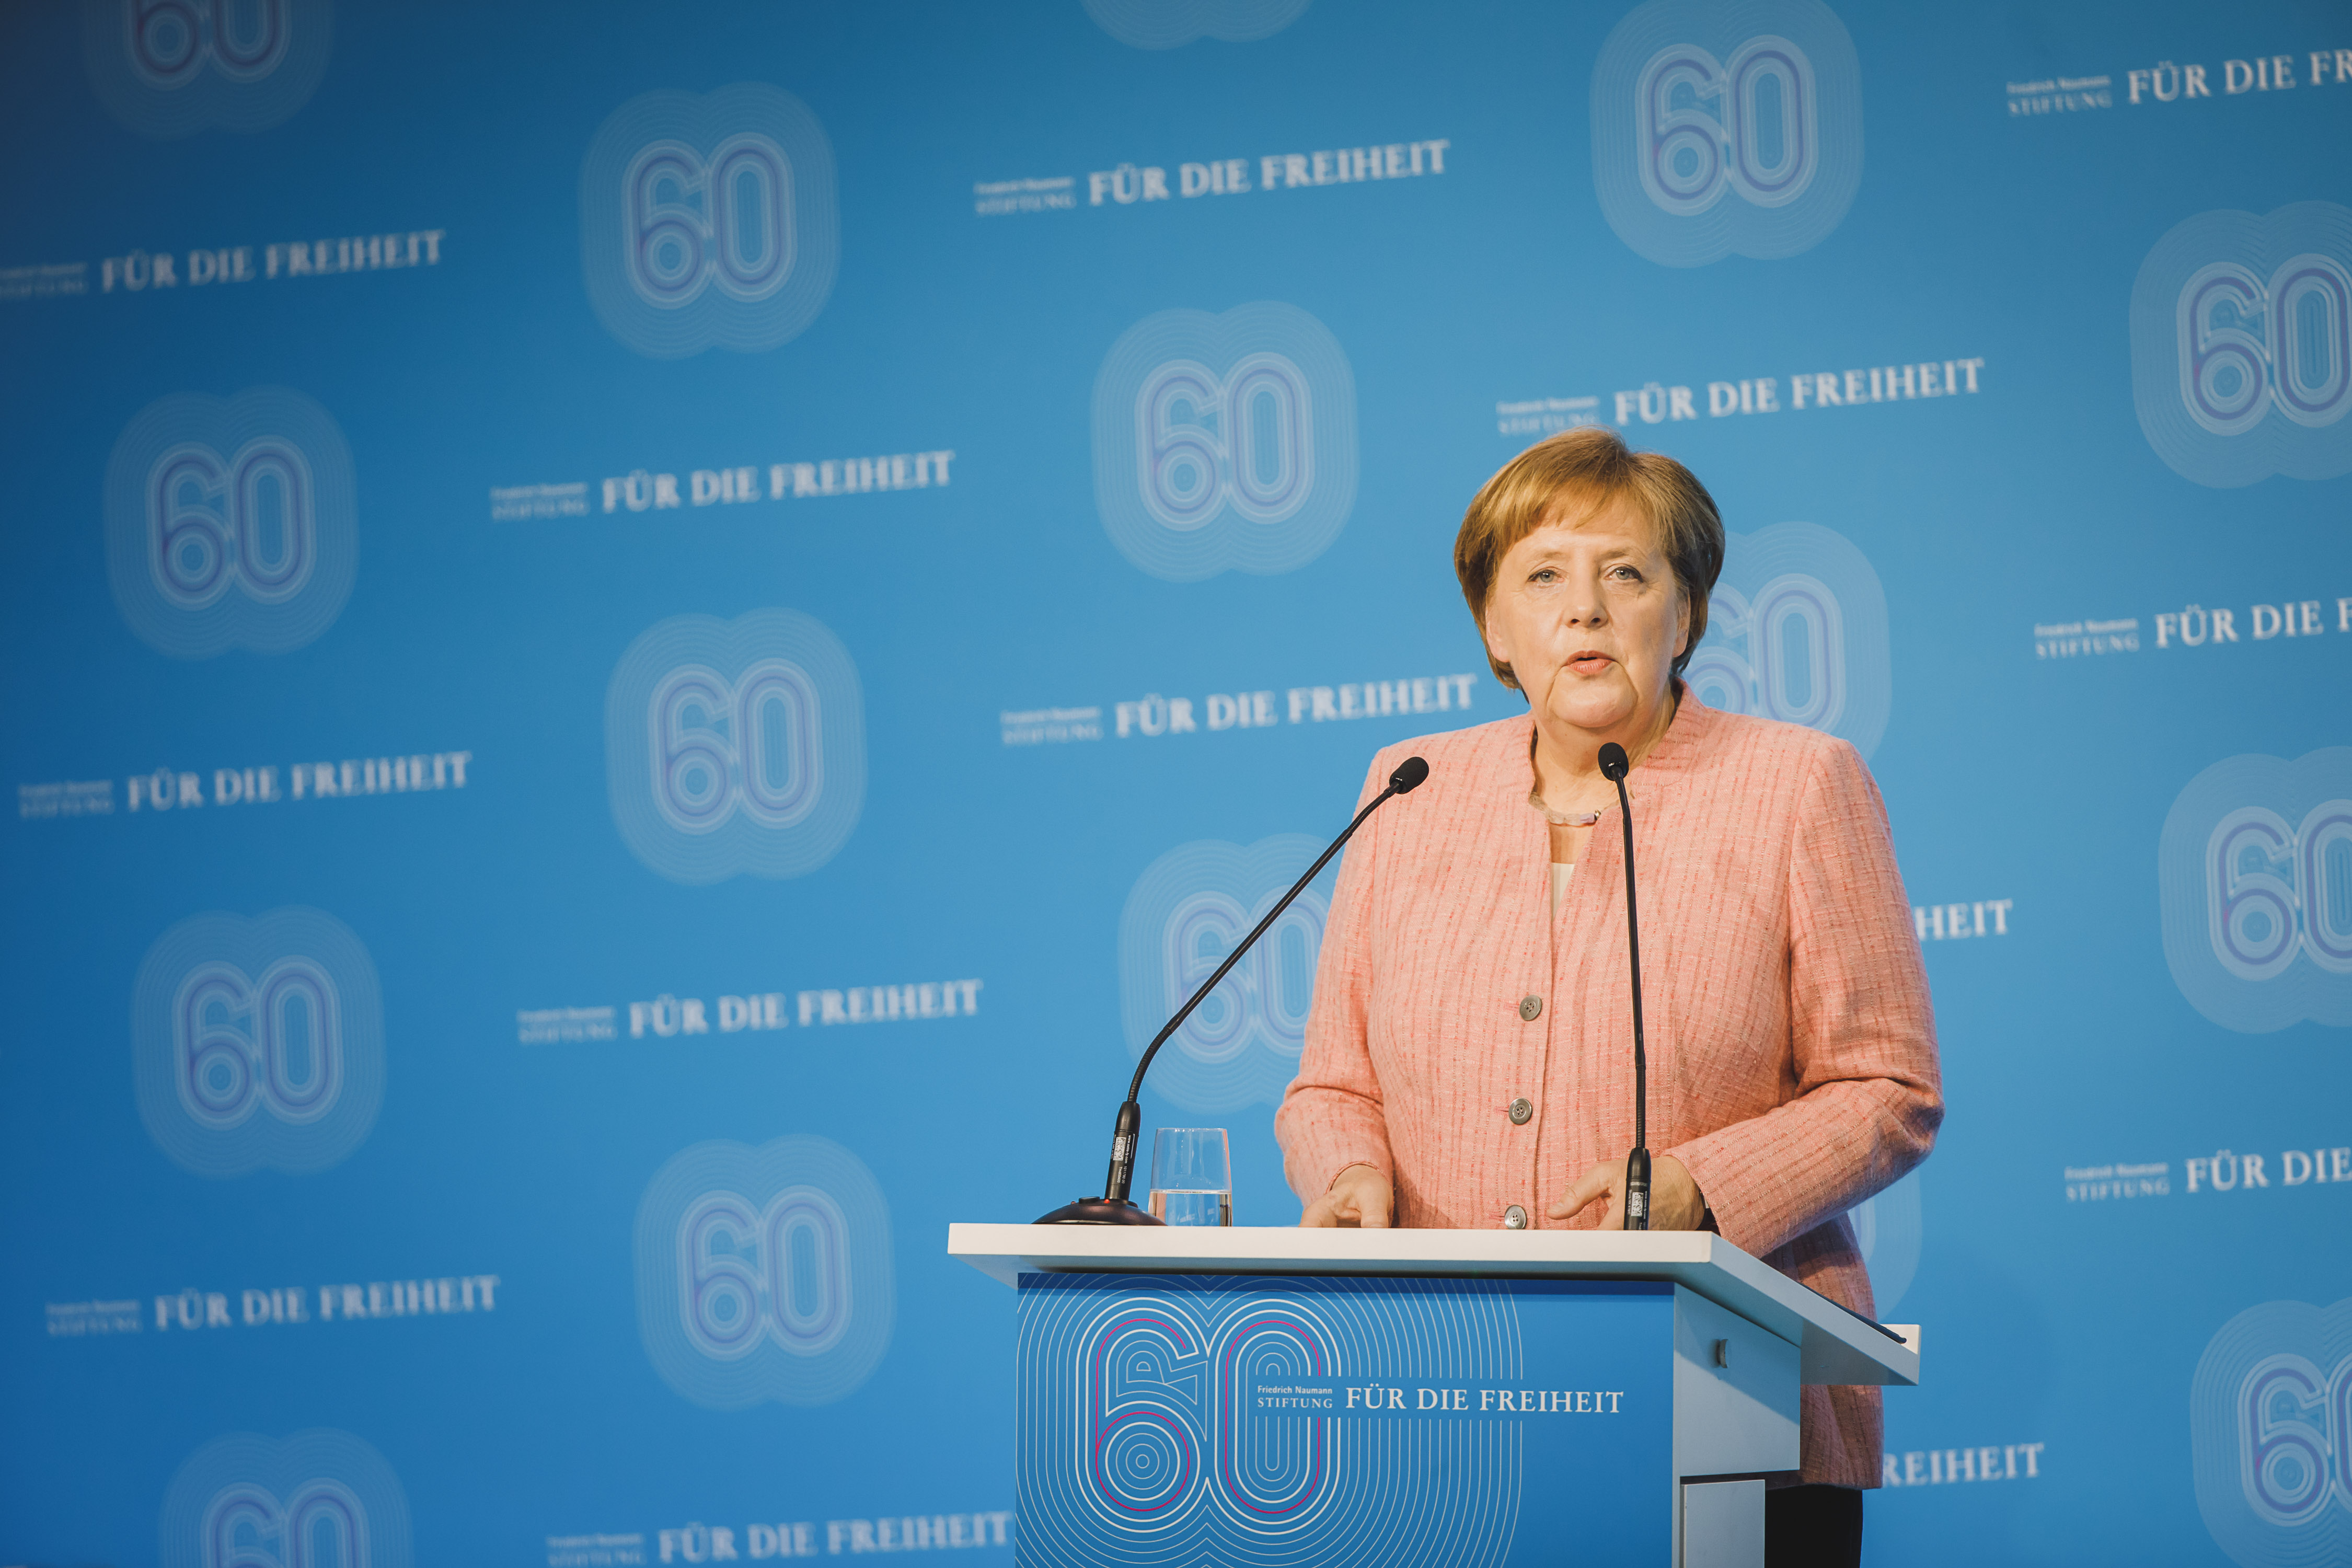 Kanselir Jerman, Angela Merkel pada Perayaan 60 Tahun Friedrich-Naumann-Stiftung für die Freiheit